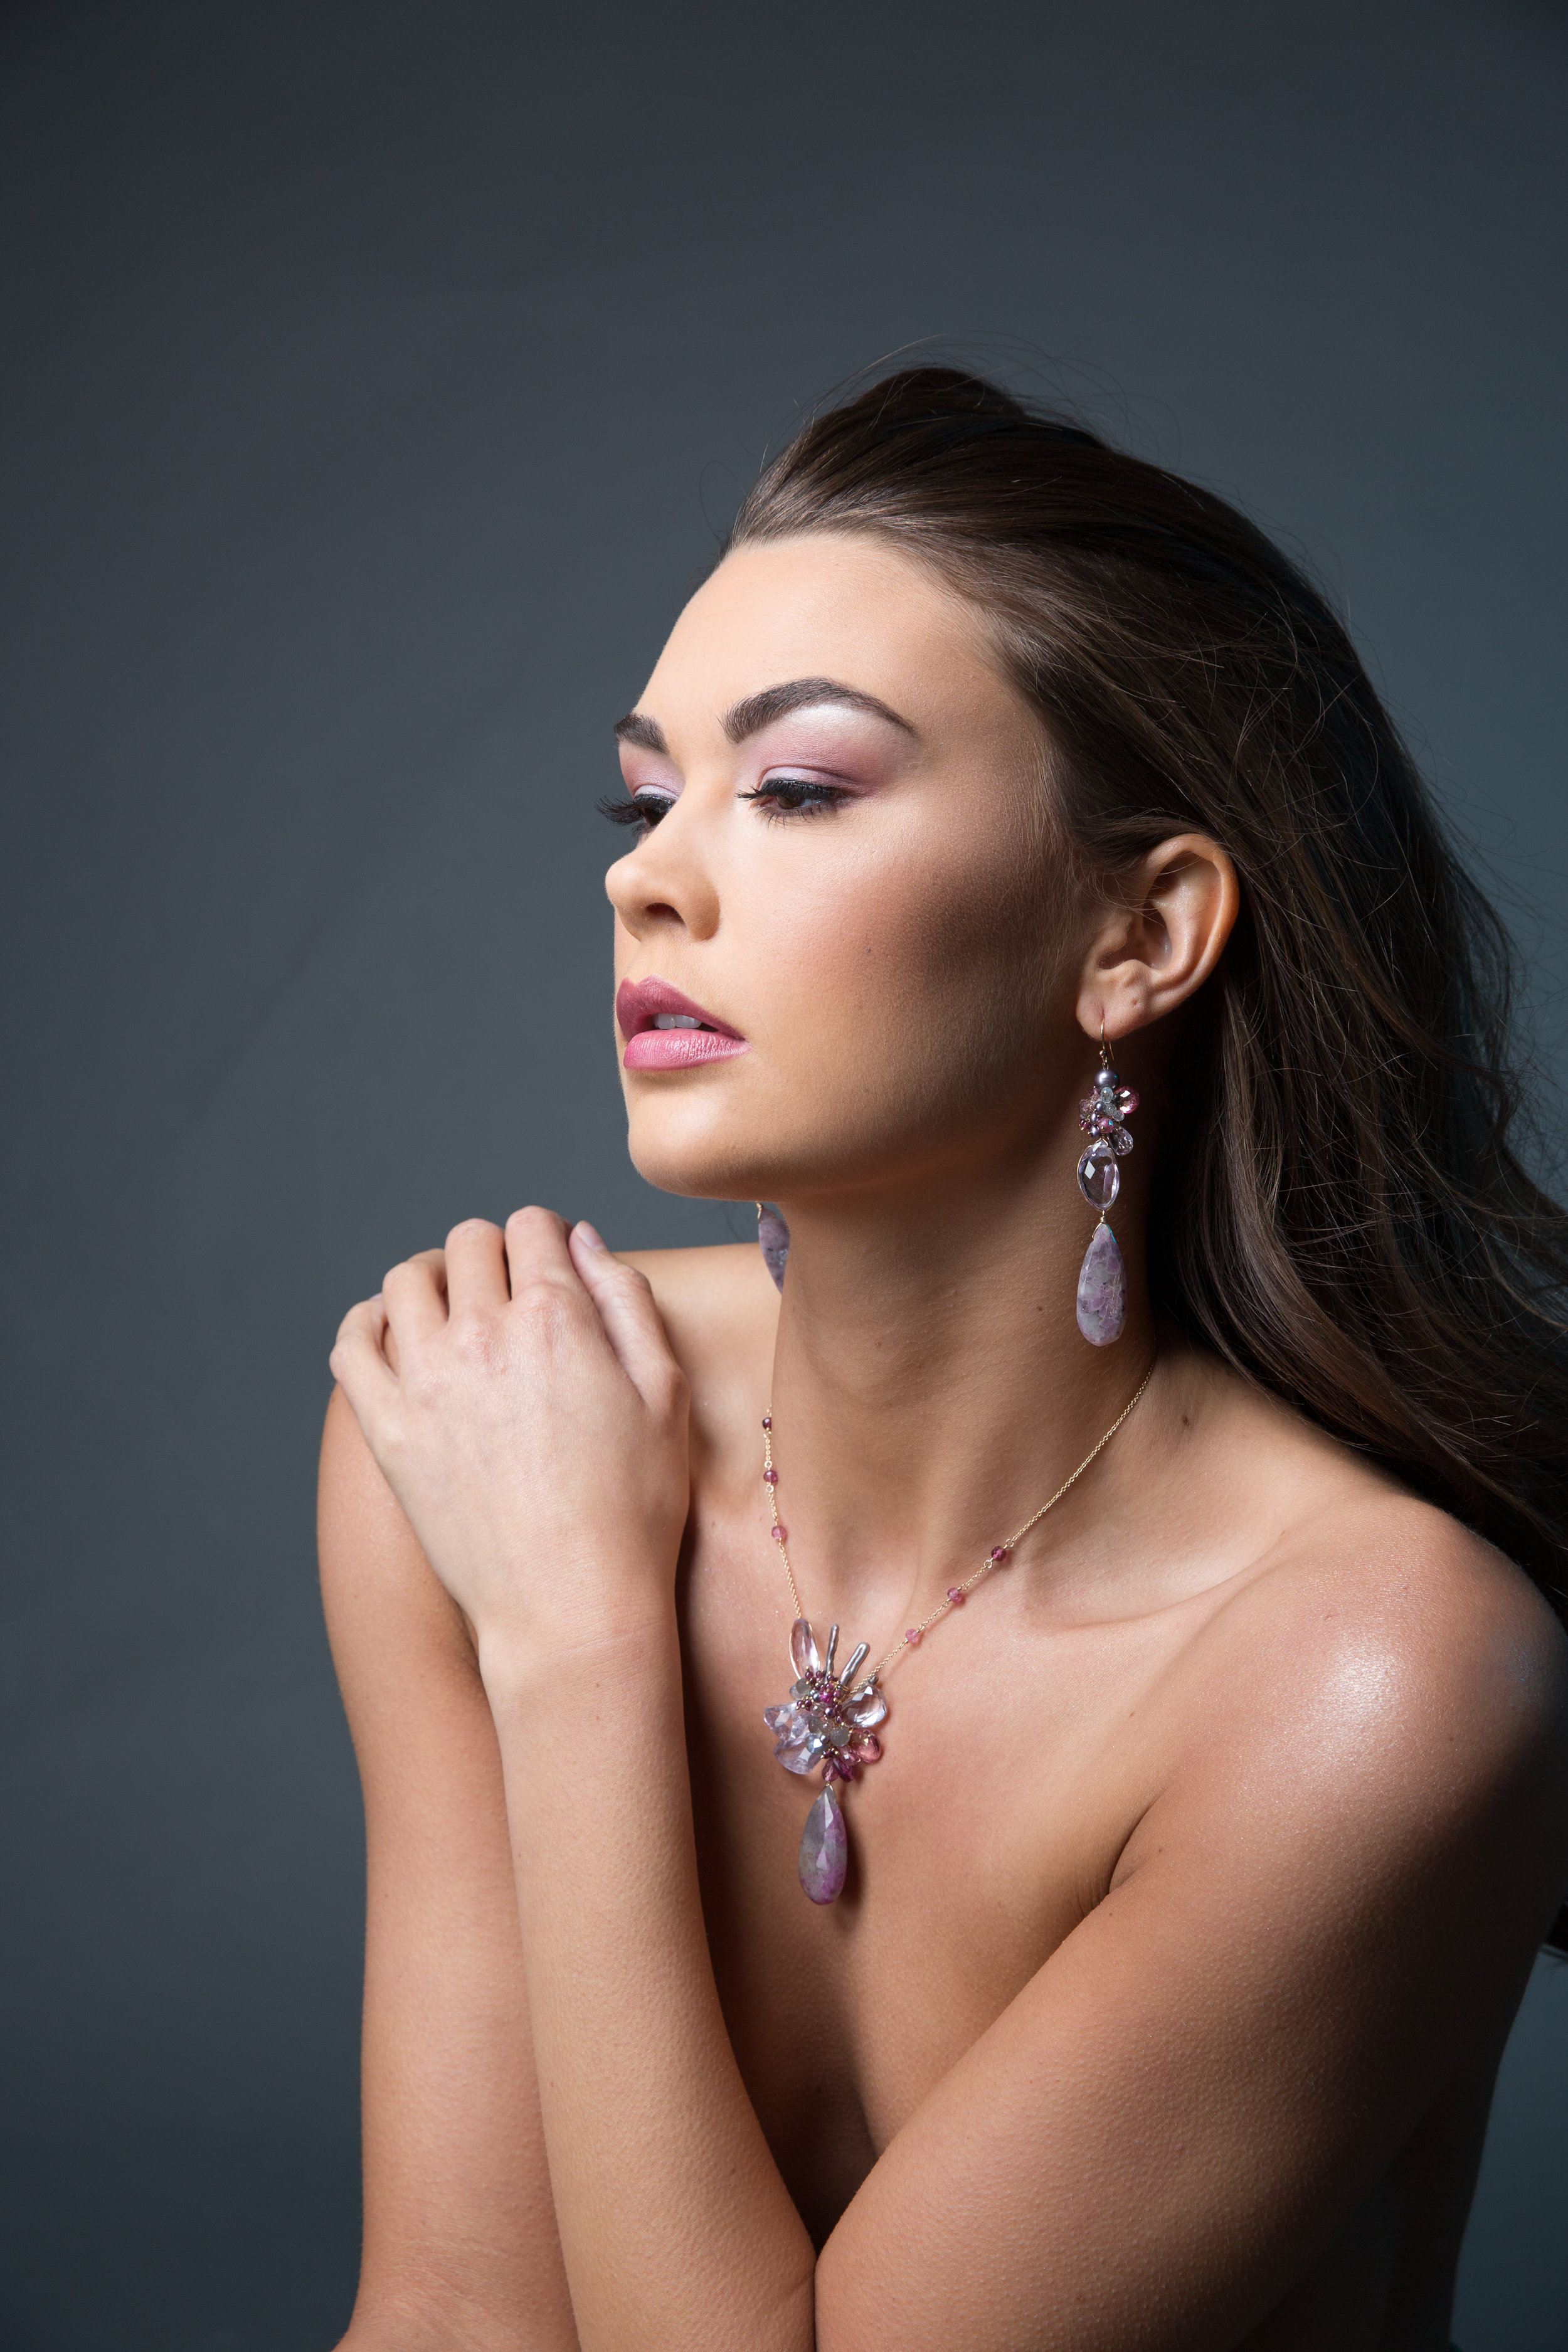 model wearing statement gemstone earrings